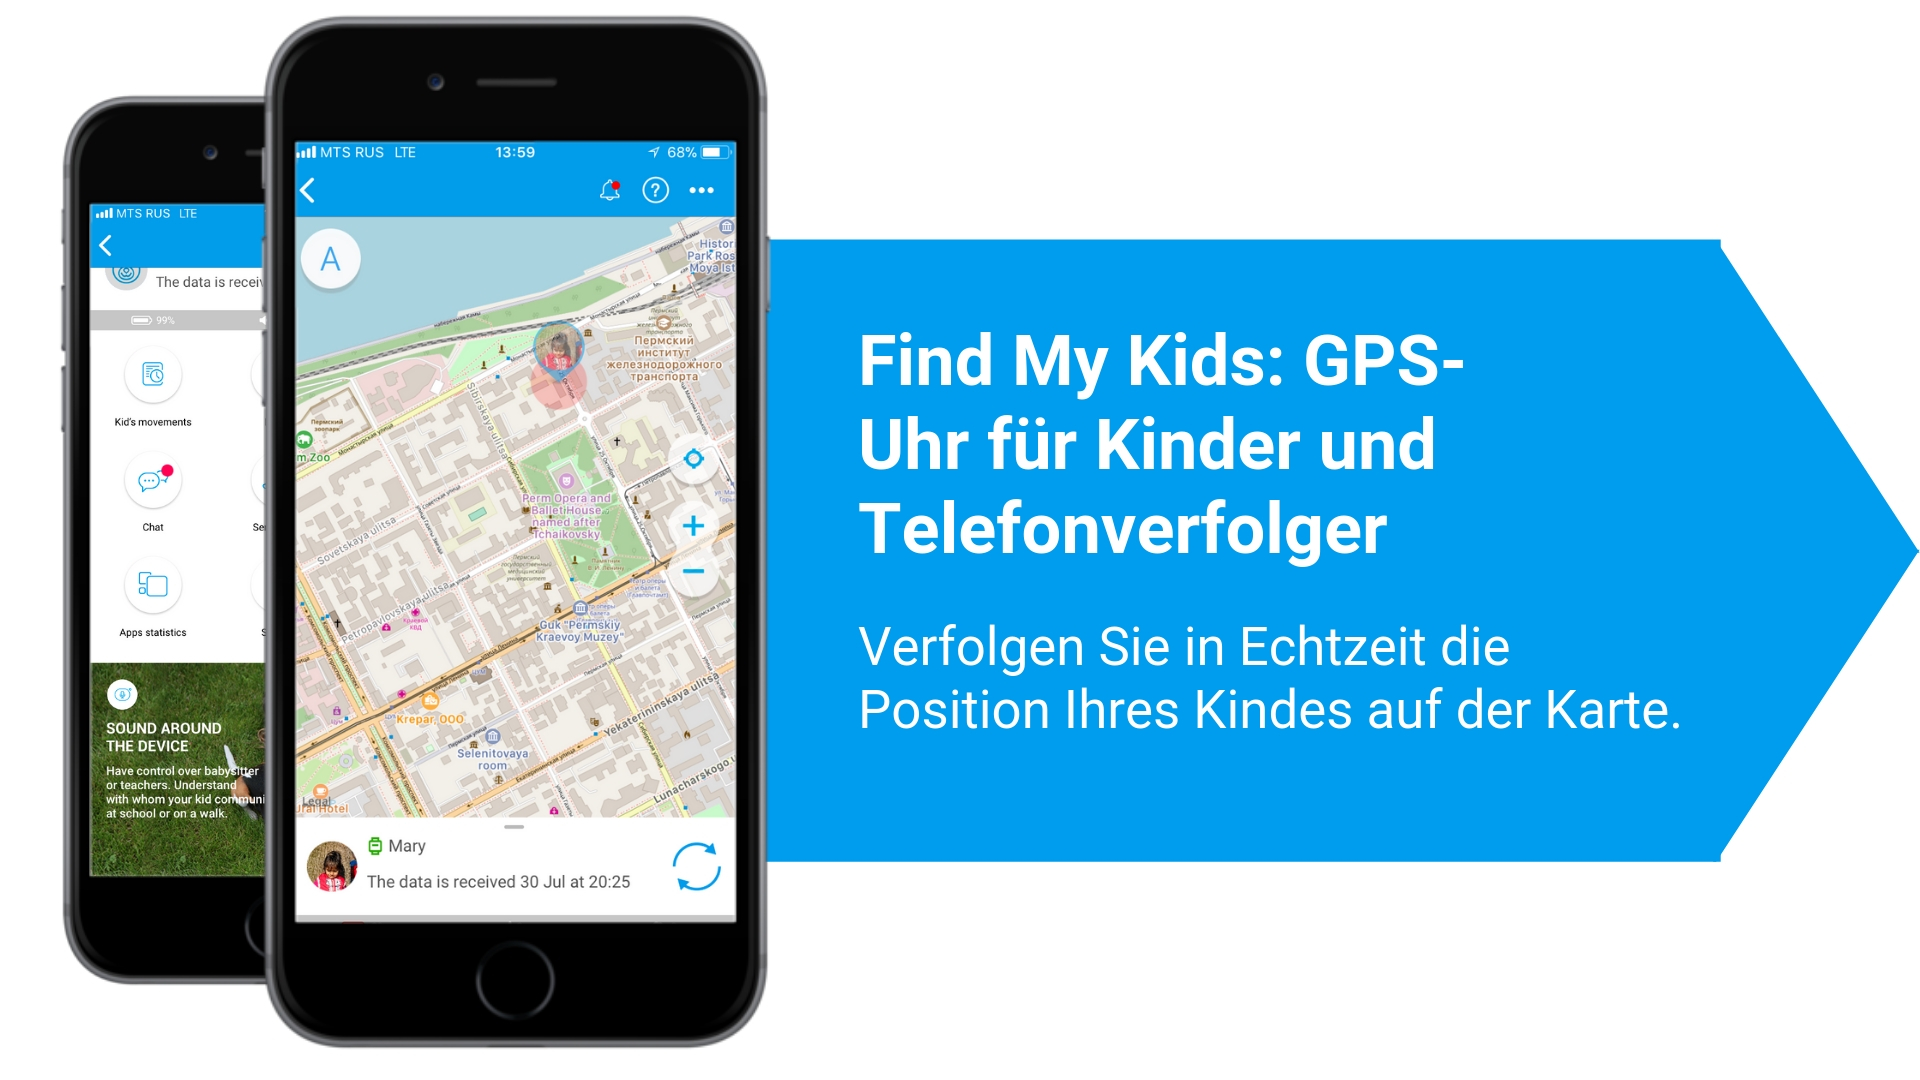 GPS-Uhr für Kinder und Telefonverfolger